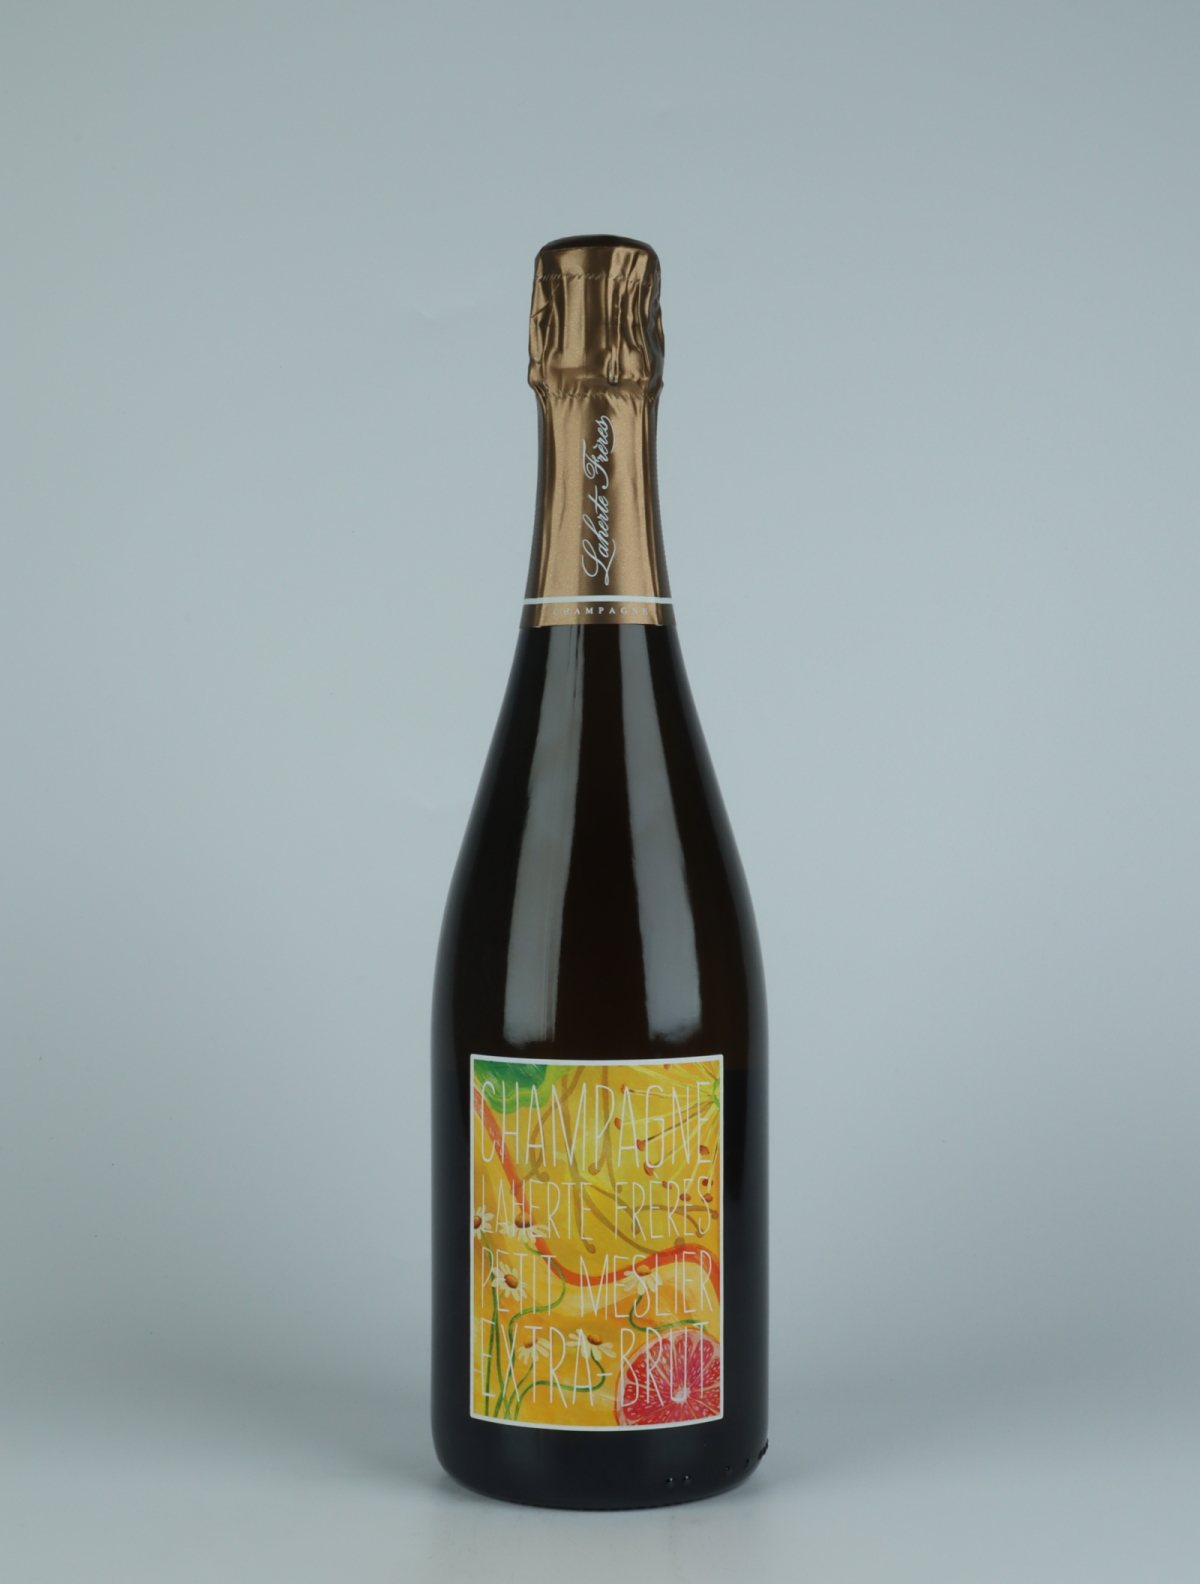 A bottle N.V. Petit Meslier - Extra Brut Sparkling from Laherte Frères, Champagne in France